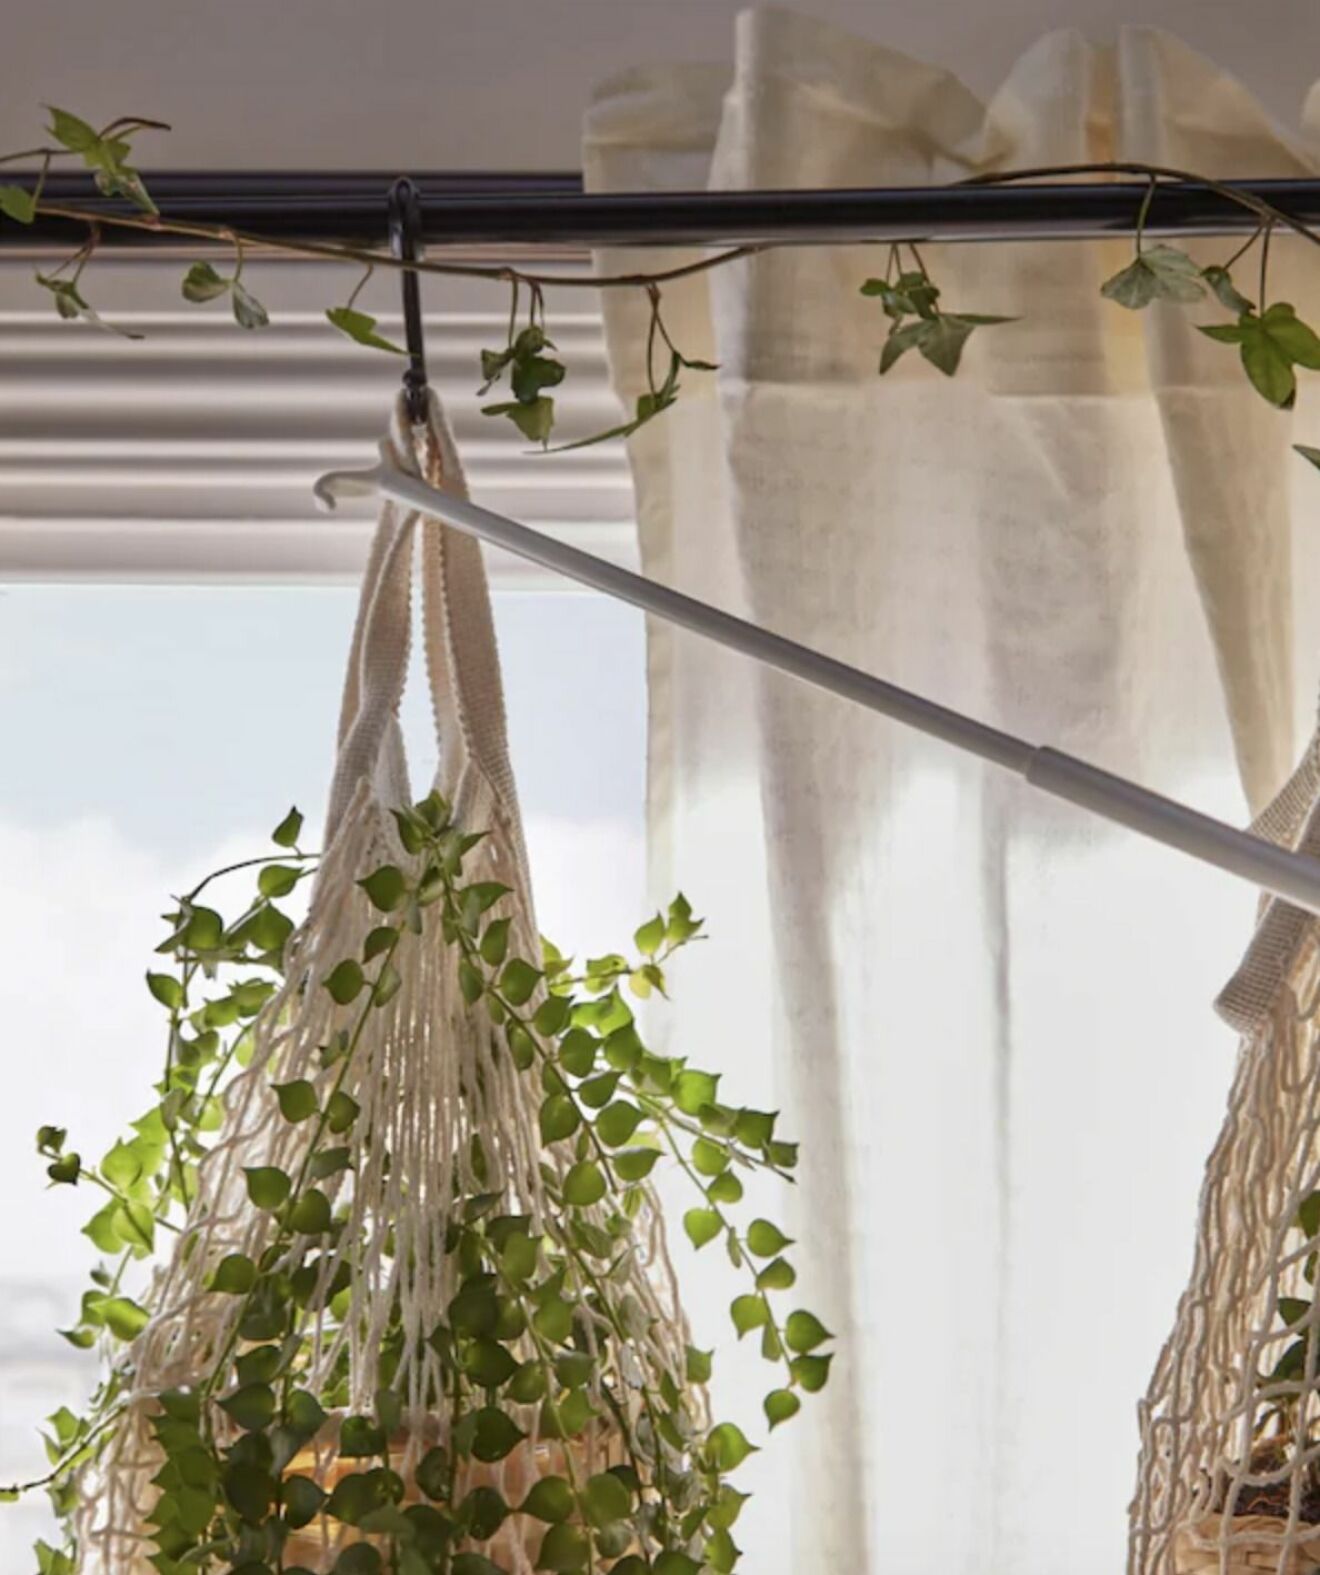 En gardinstång är bra att använda till din växtgardin